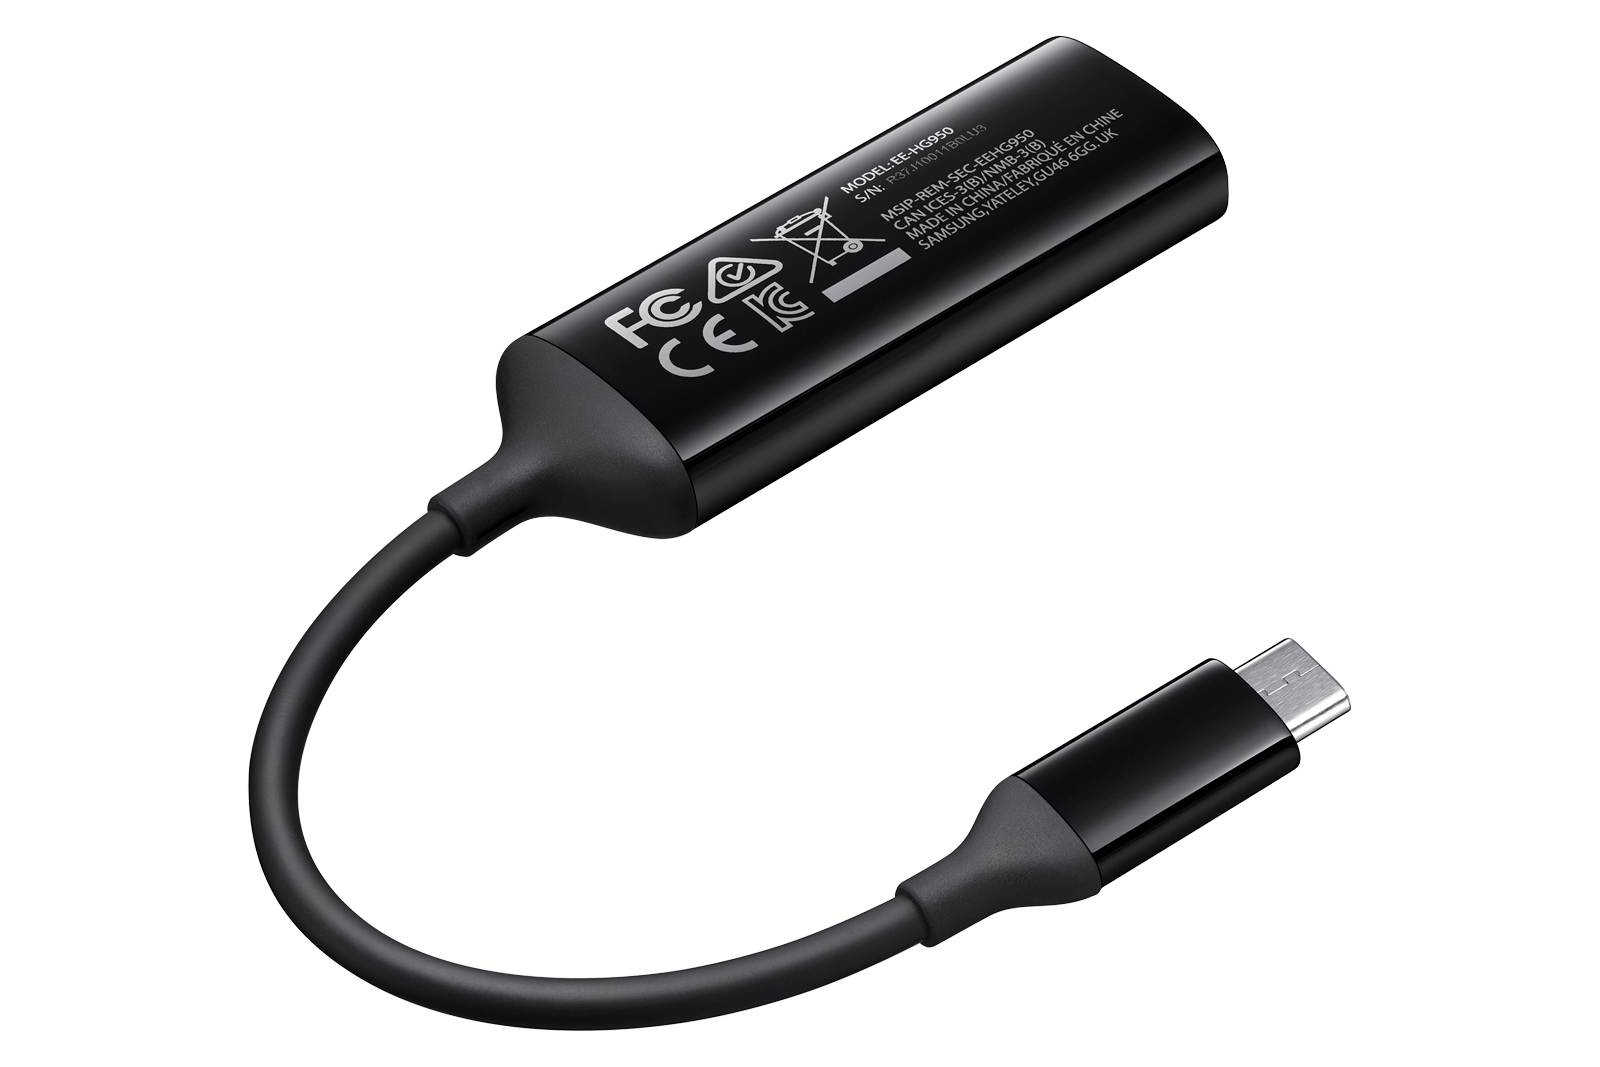 Cable USB C a HDMI para celulares SAMSUNG - JH9137 